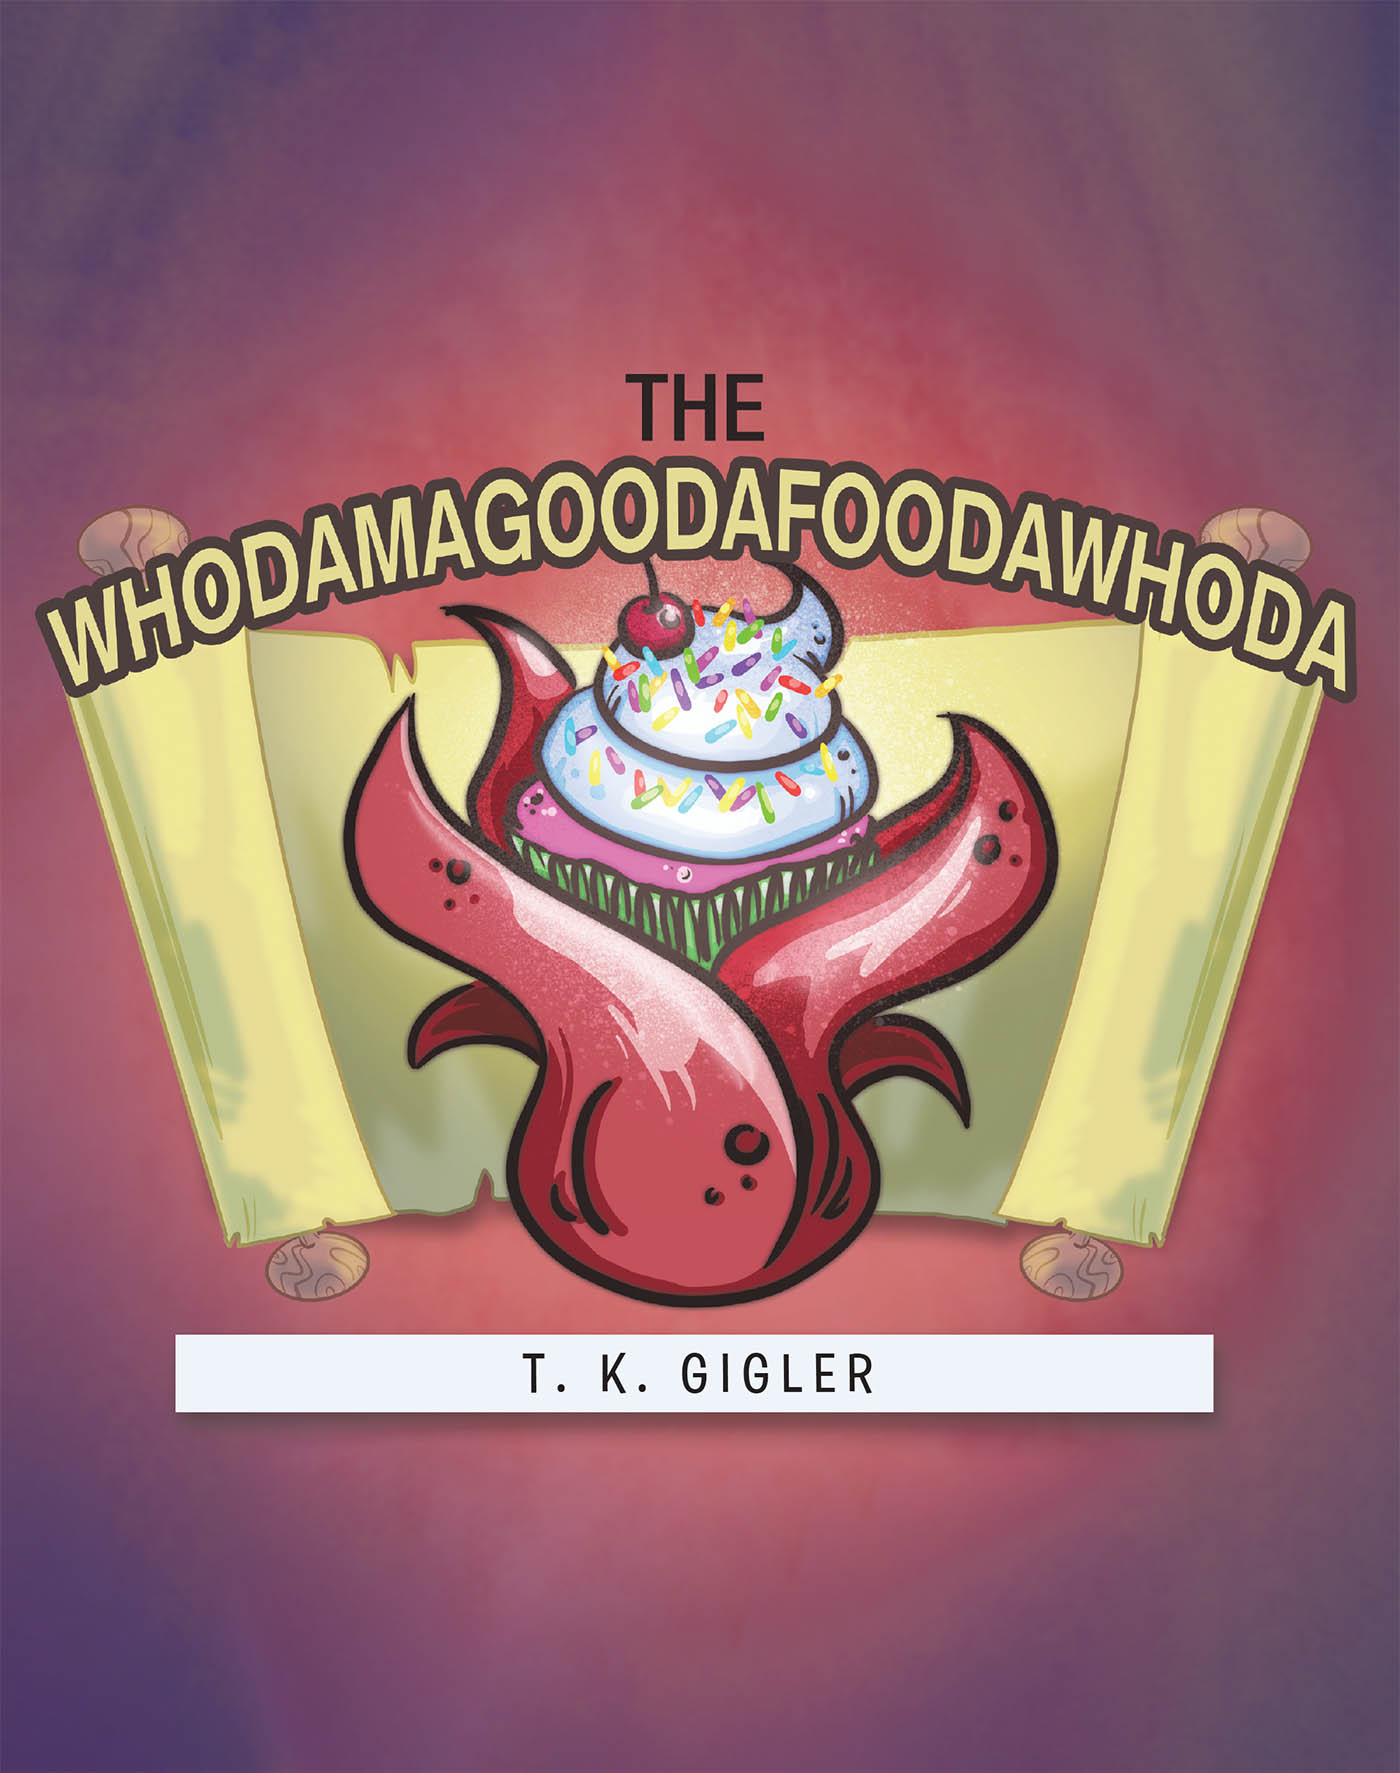 THE WHODAMAGOODAFOODAWHODA Cover Image